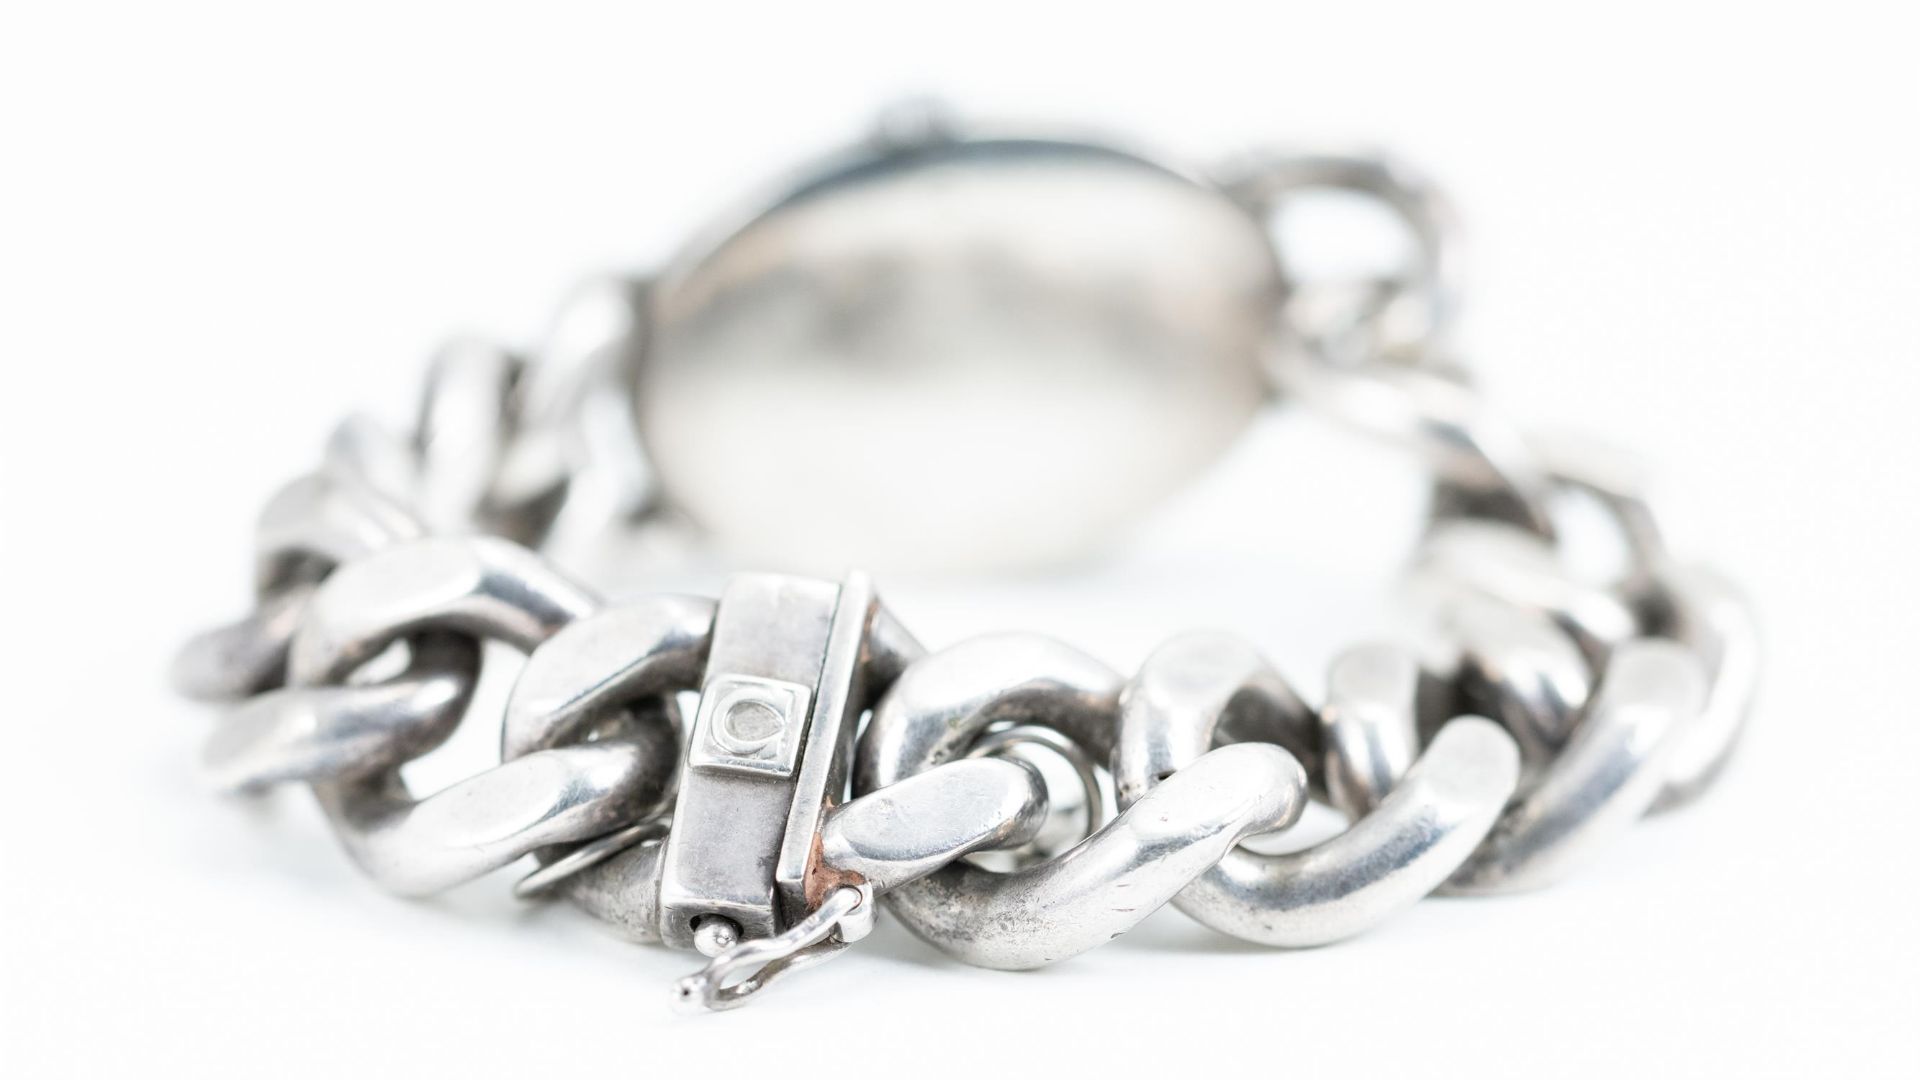 Omega Jeux D'Argent Silver Bracelet Watch - Image 3 of 4